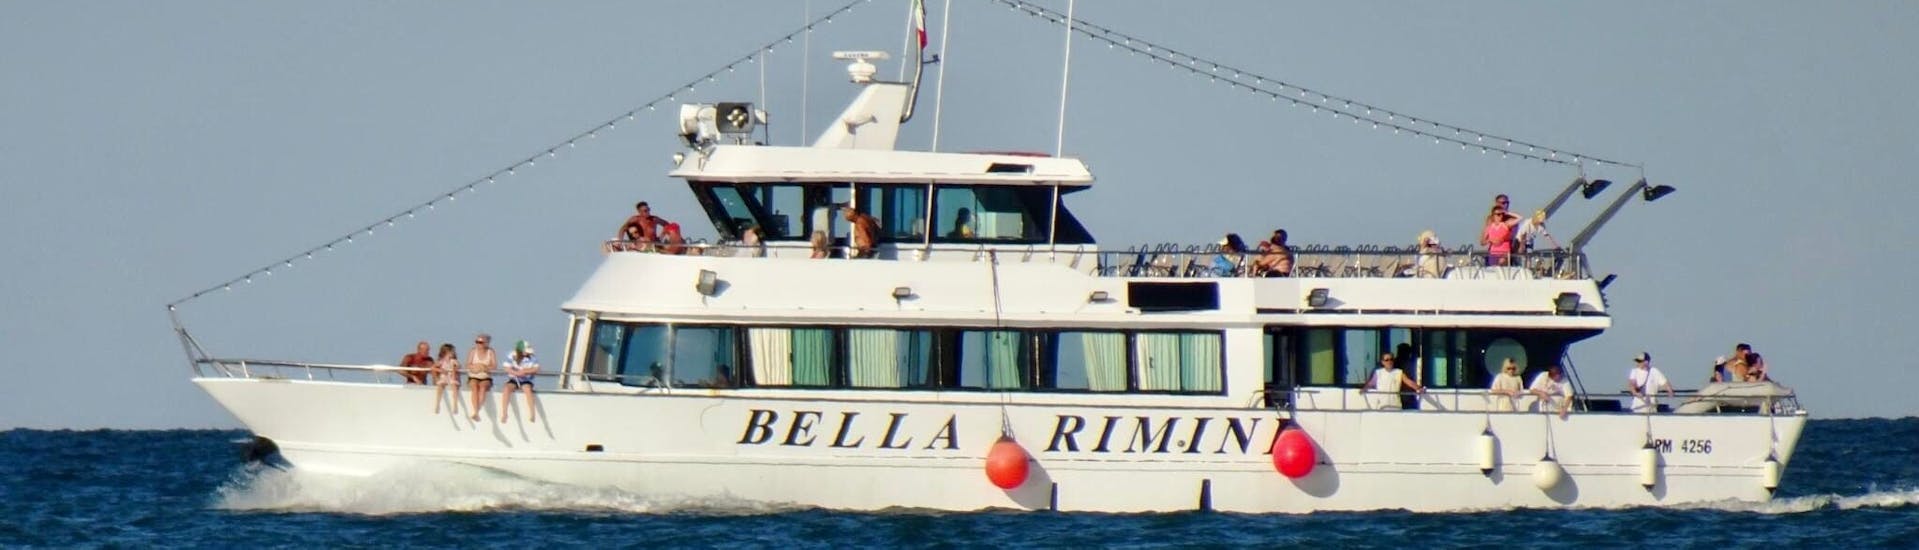 El barco Bella Rimini durante el Viaje en Barco al Golfo de Orosei & Grotta del Fico con Paradas para Nadar con Sardinia Natural Park Tours.